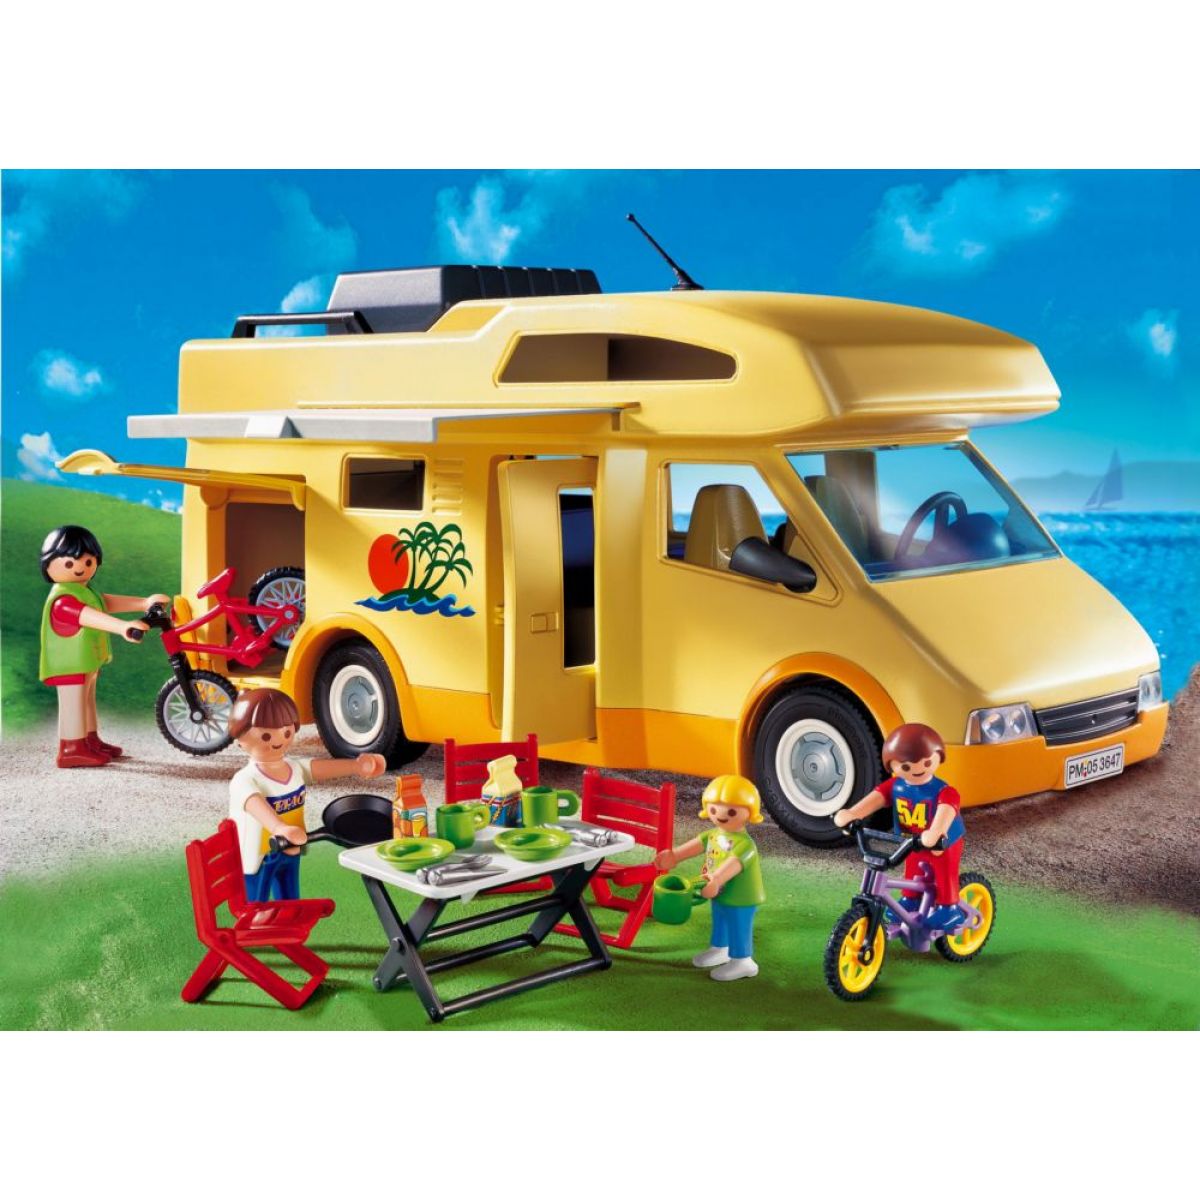 Playmobil 3647 - Rodinný obytný vůz